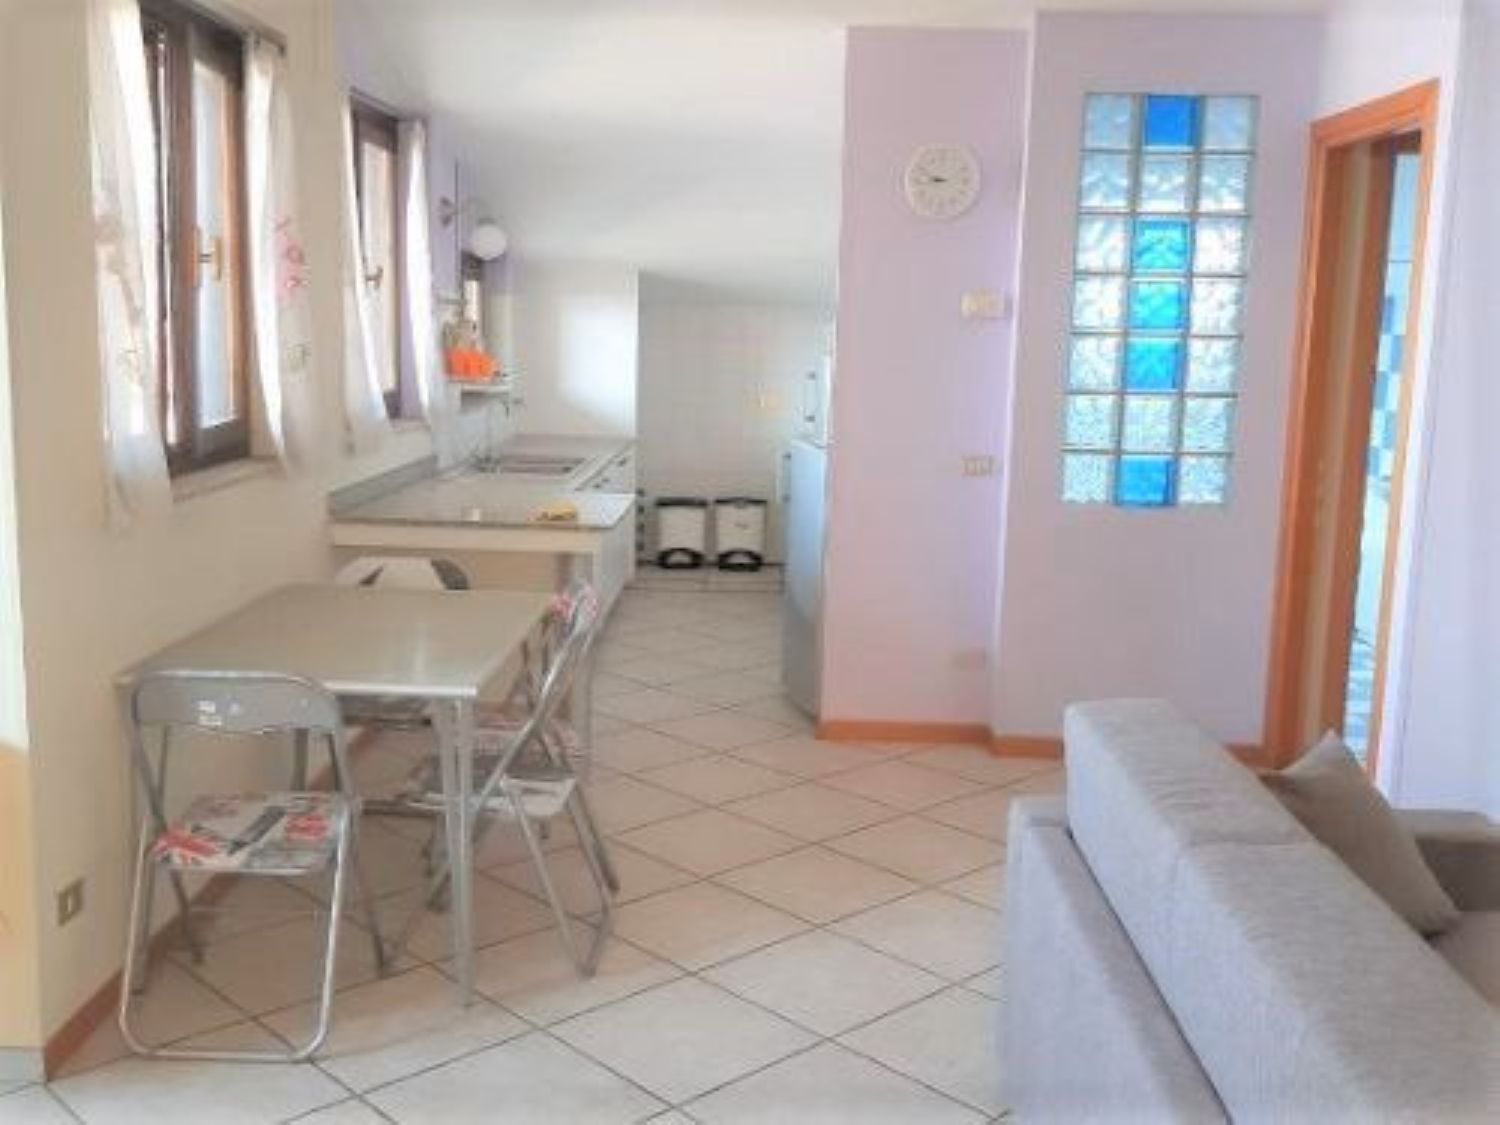 Appartamento in vendita a Borgomanero, 2 locali, prezzo € 98.000 | PortaleAgenzieImmobiliari.it